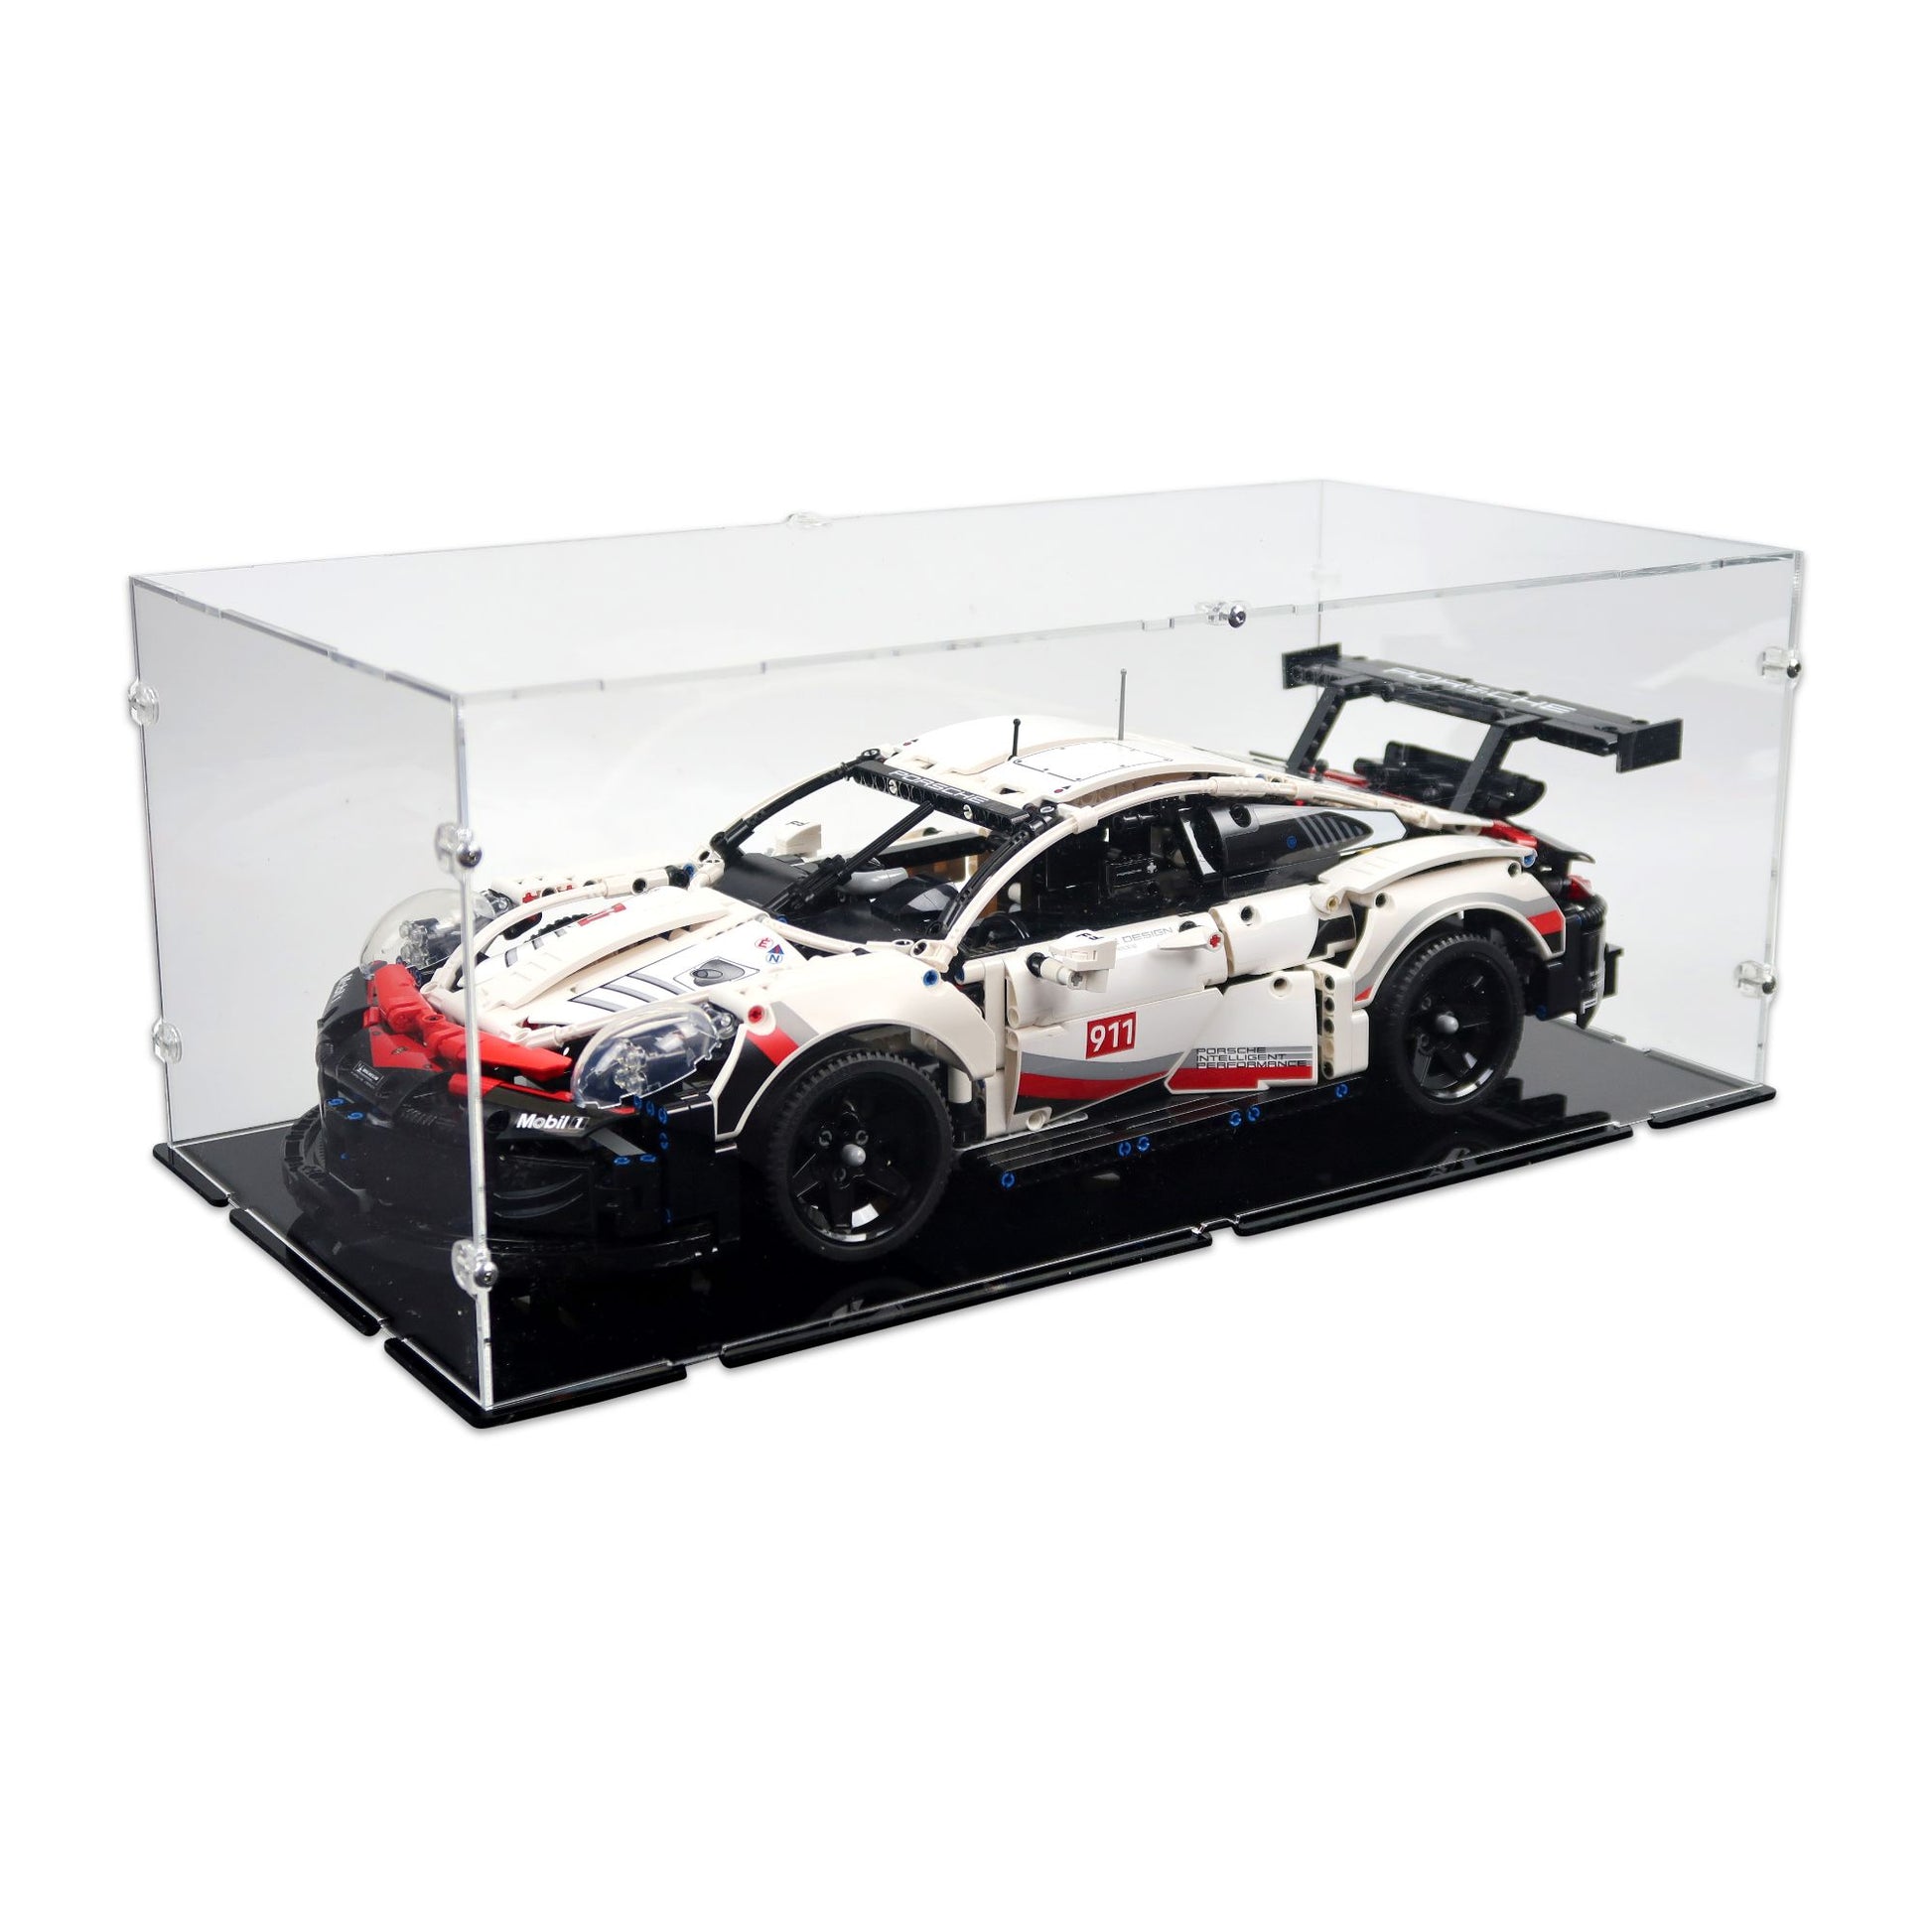 42096 Porsche 911 RSR Display – Kingdom Brick Supply